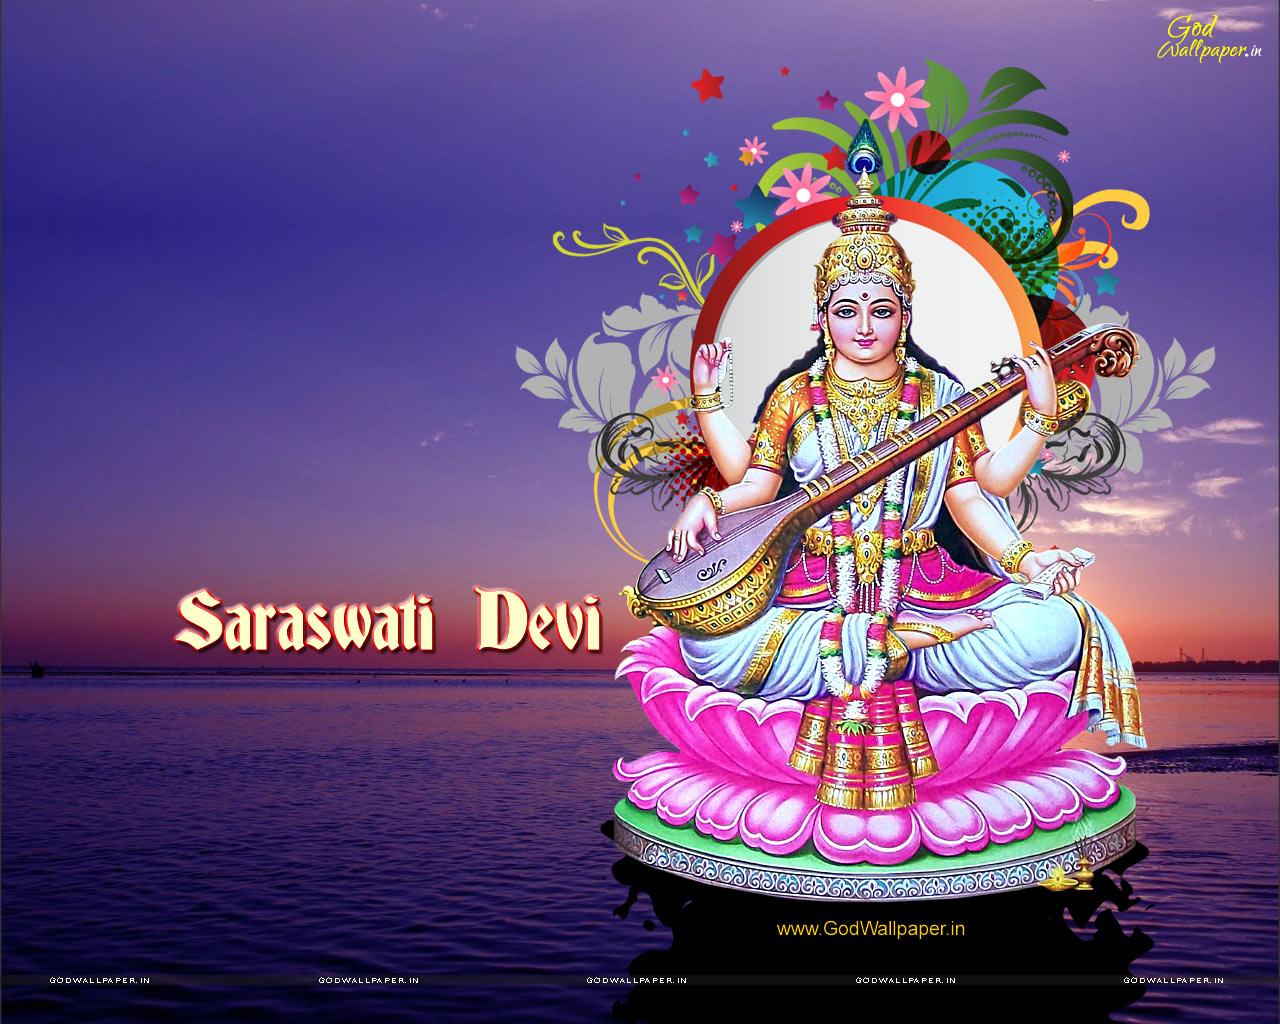 Img - Saraswati Devi Images Hd Transparent PNG - 600x651 - Free Download on  NicePNG